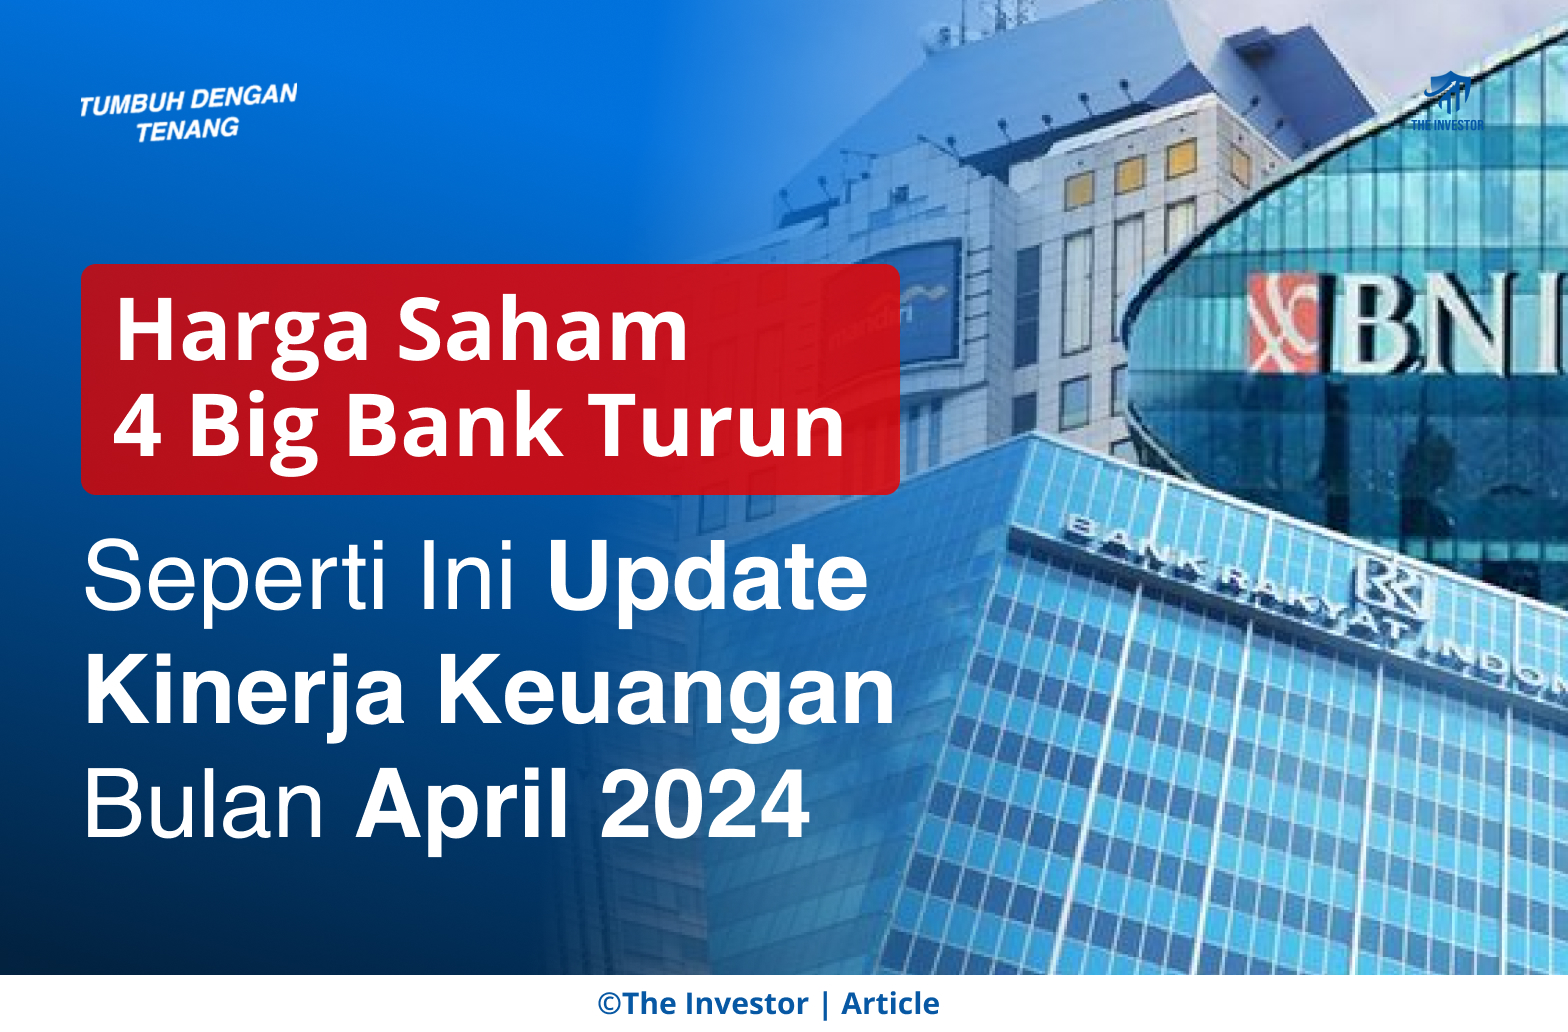 Harga Saham 4 Big Bank Turun, Seperti Ini Update Kinerja Keuangan Bulan April 2024